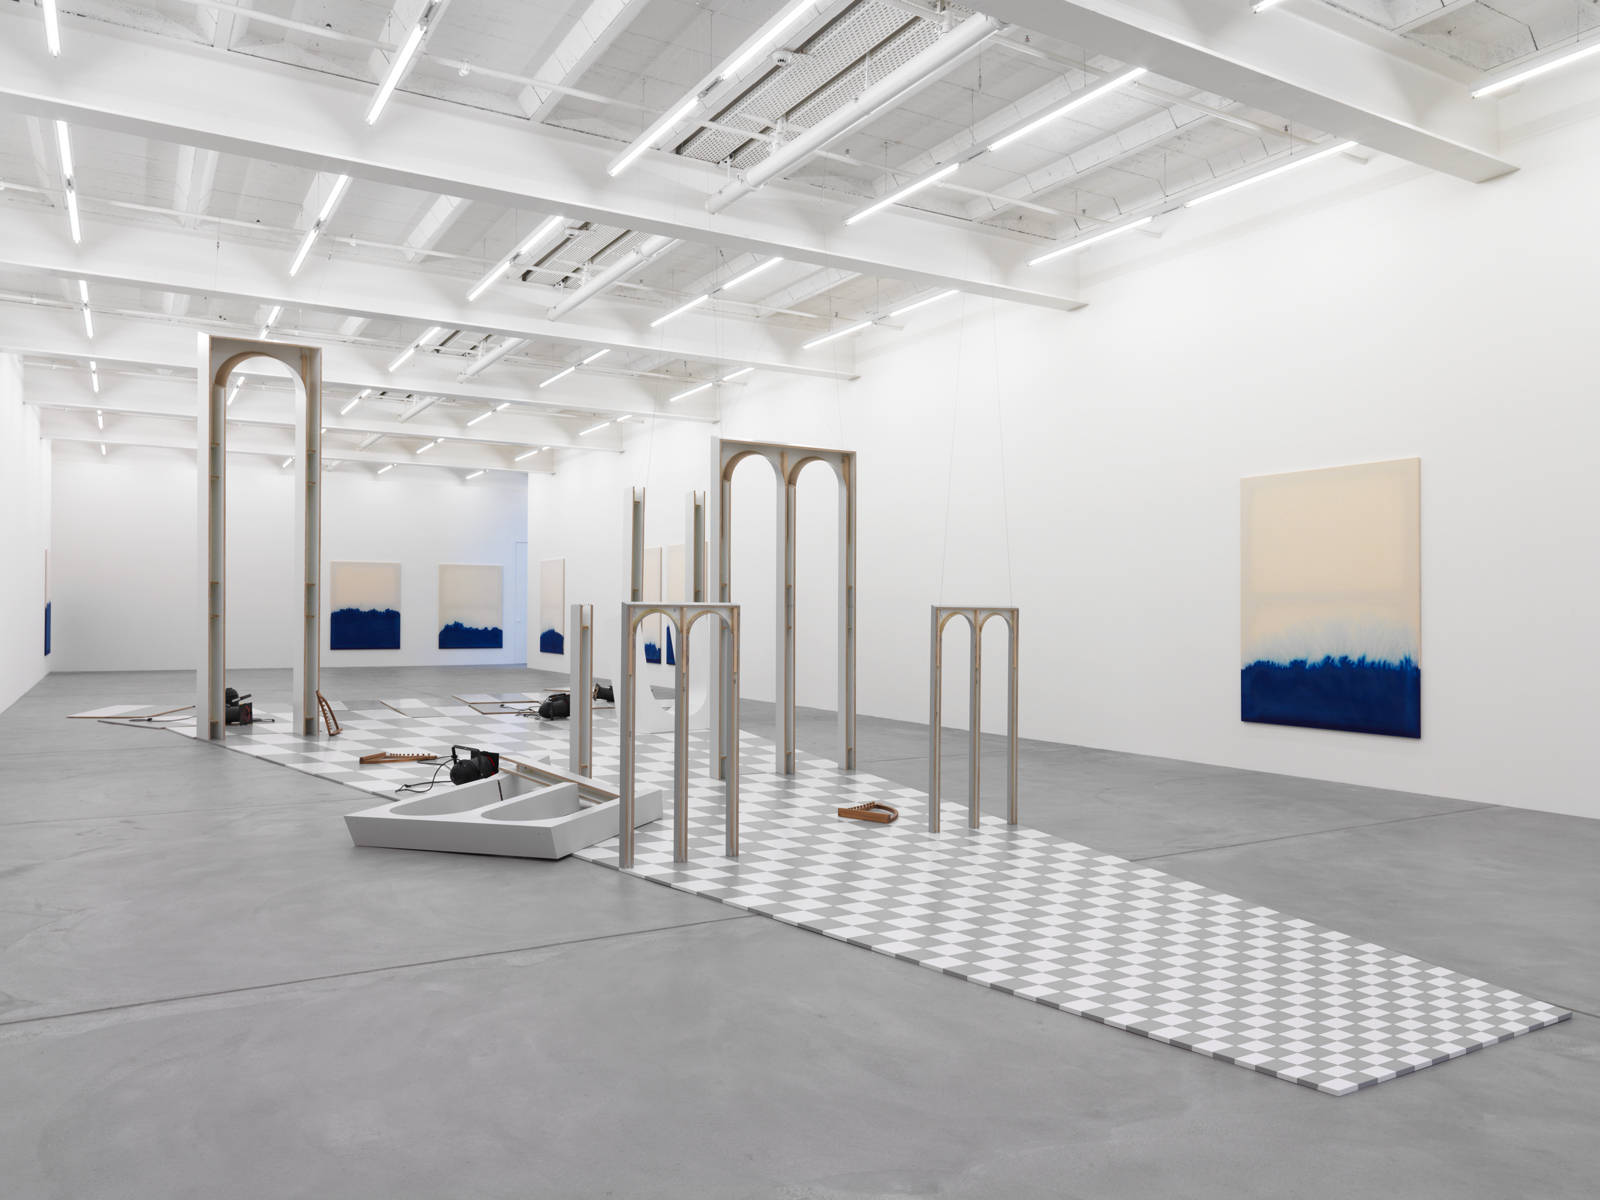 Latifa Echakhch / "The Scene Takes Place", exhibition view, Galerie Eva Presenhuber, Zürich  / 2013